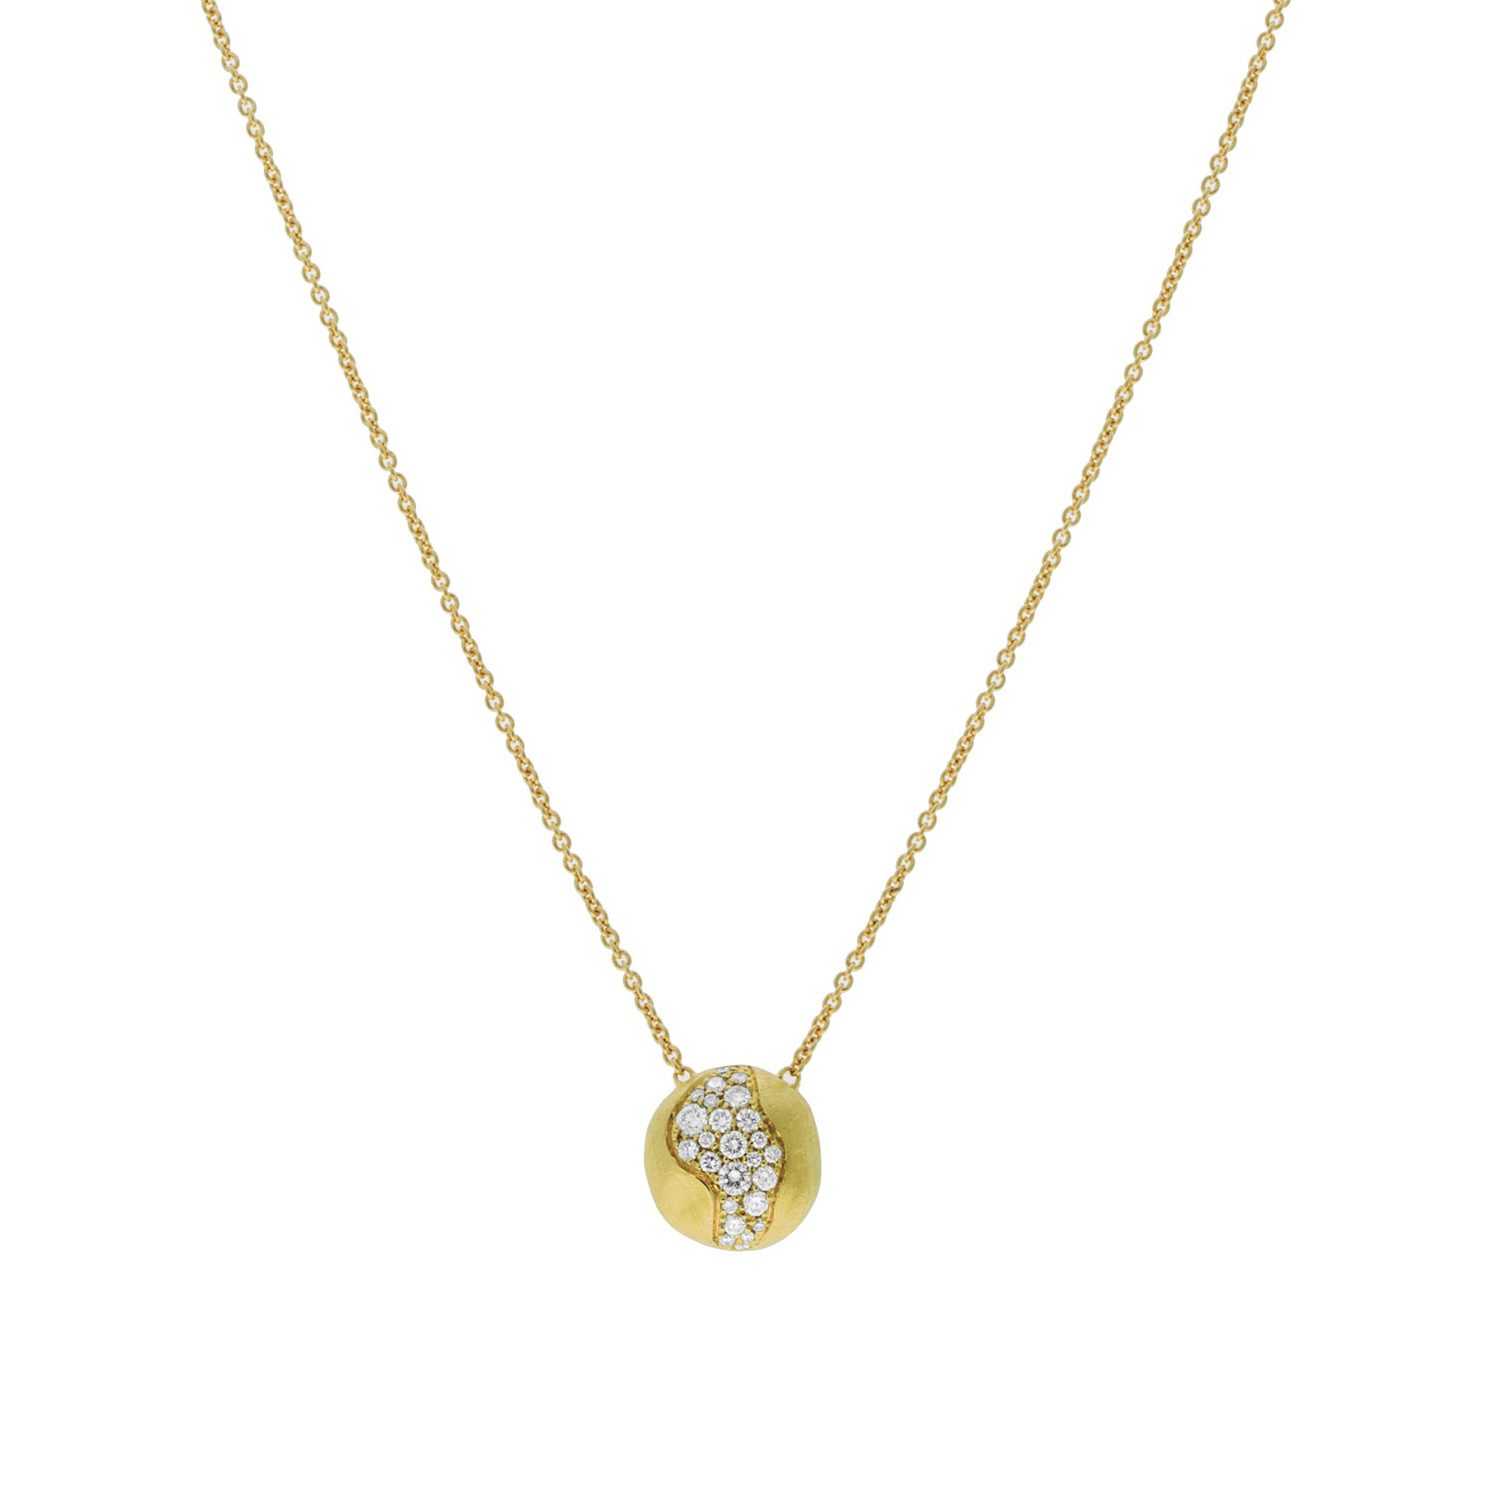 Mórdhíol Seodra OEM/ODM Saincheaptha 18k Gold Diamond réaltbhuíon muince dearthóir jewelry na mban